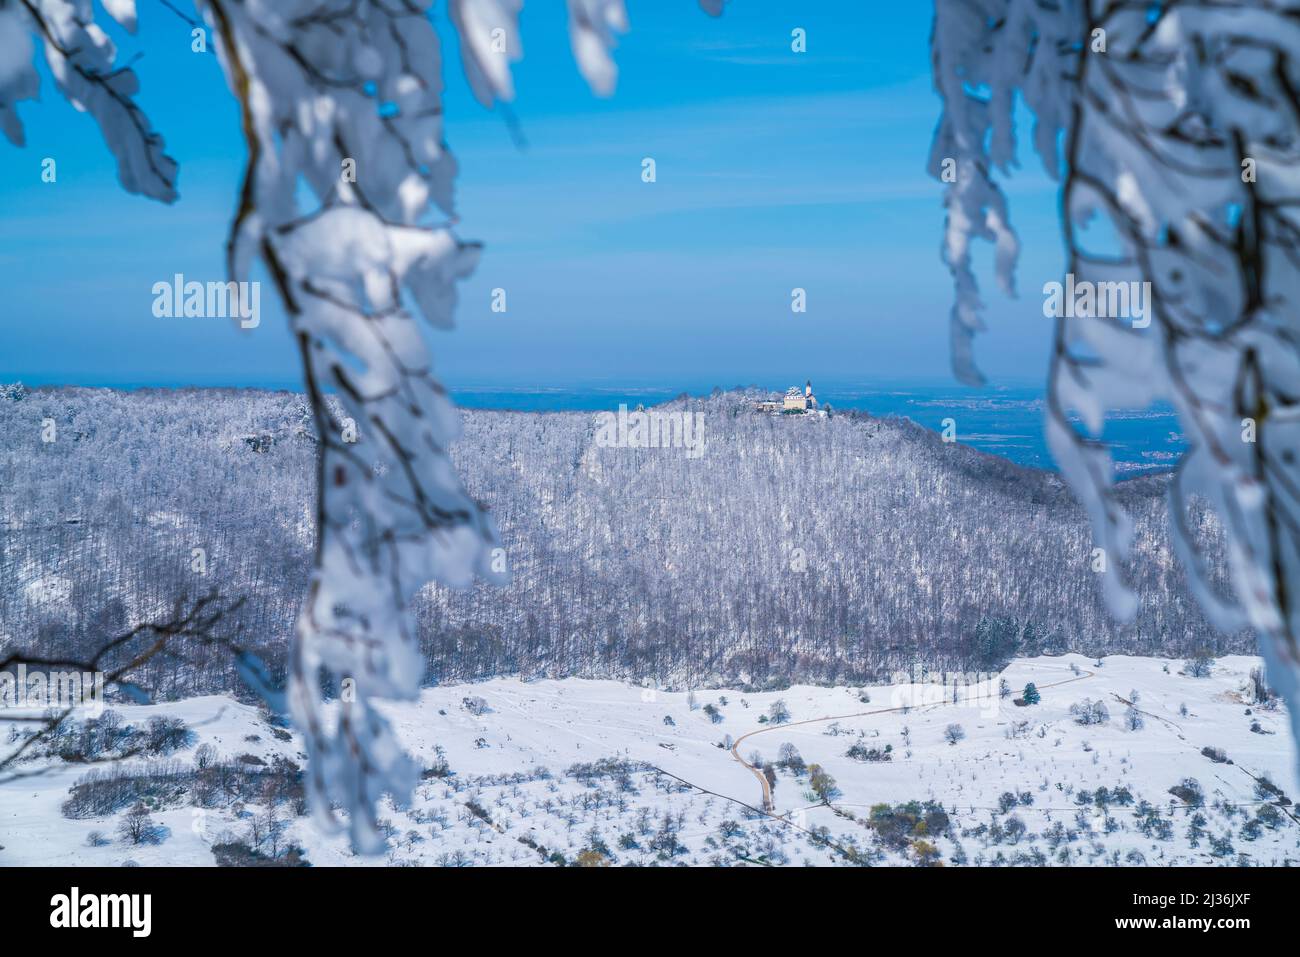 Alemania, ruinas del antiguo castillo teck en la montaña de swabian alb techkberg cubierto con nieve blanca en invierno paisaje de la naturaleza de las maravillas en un helado de hielo Foto de stock